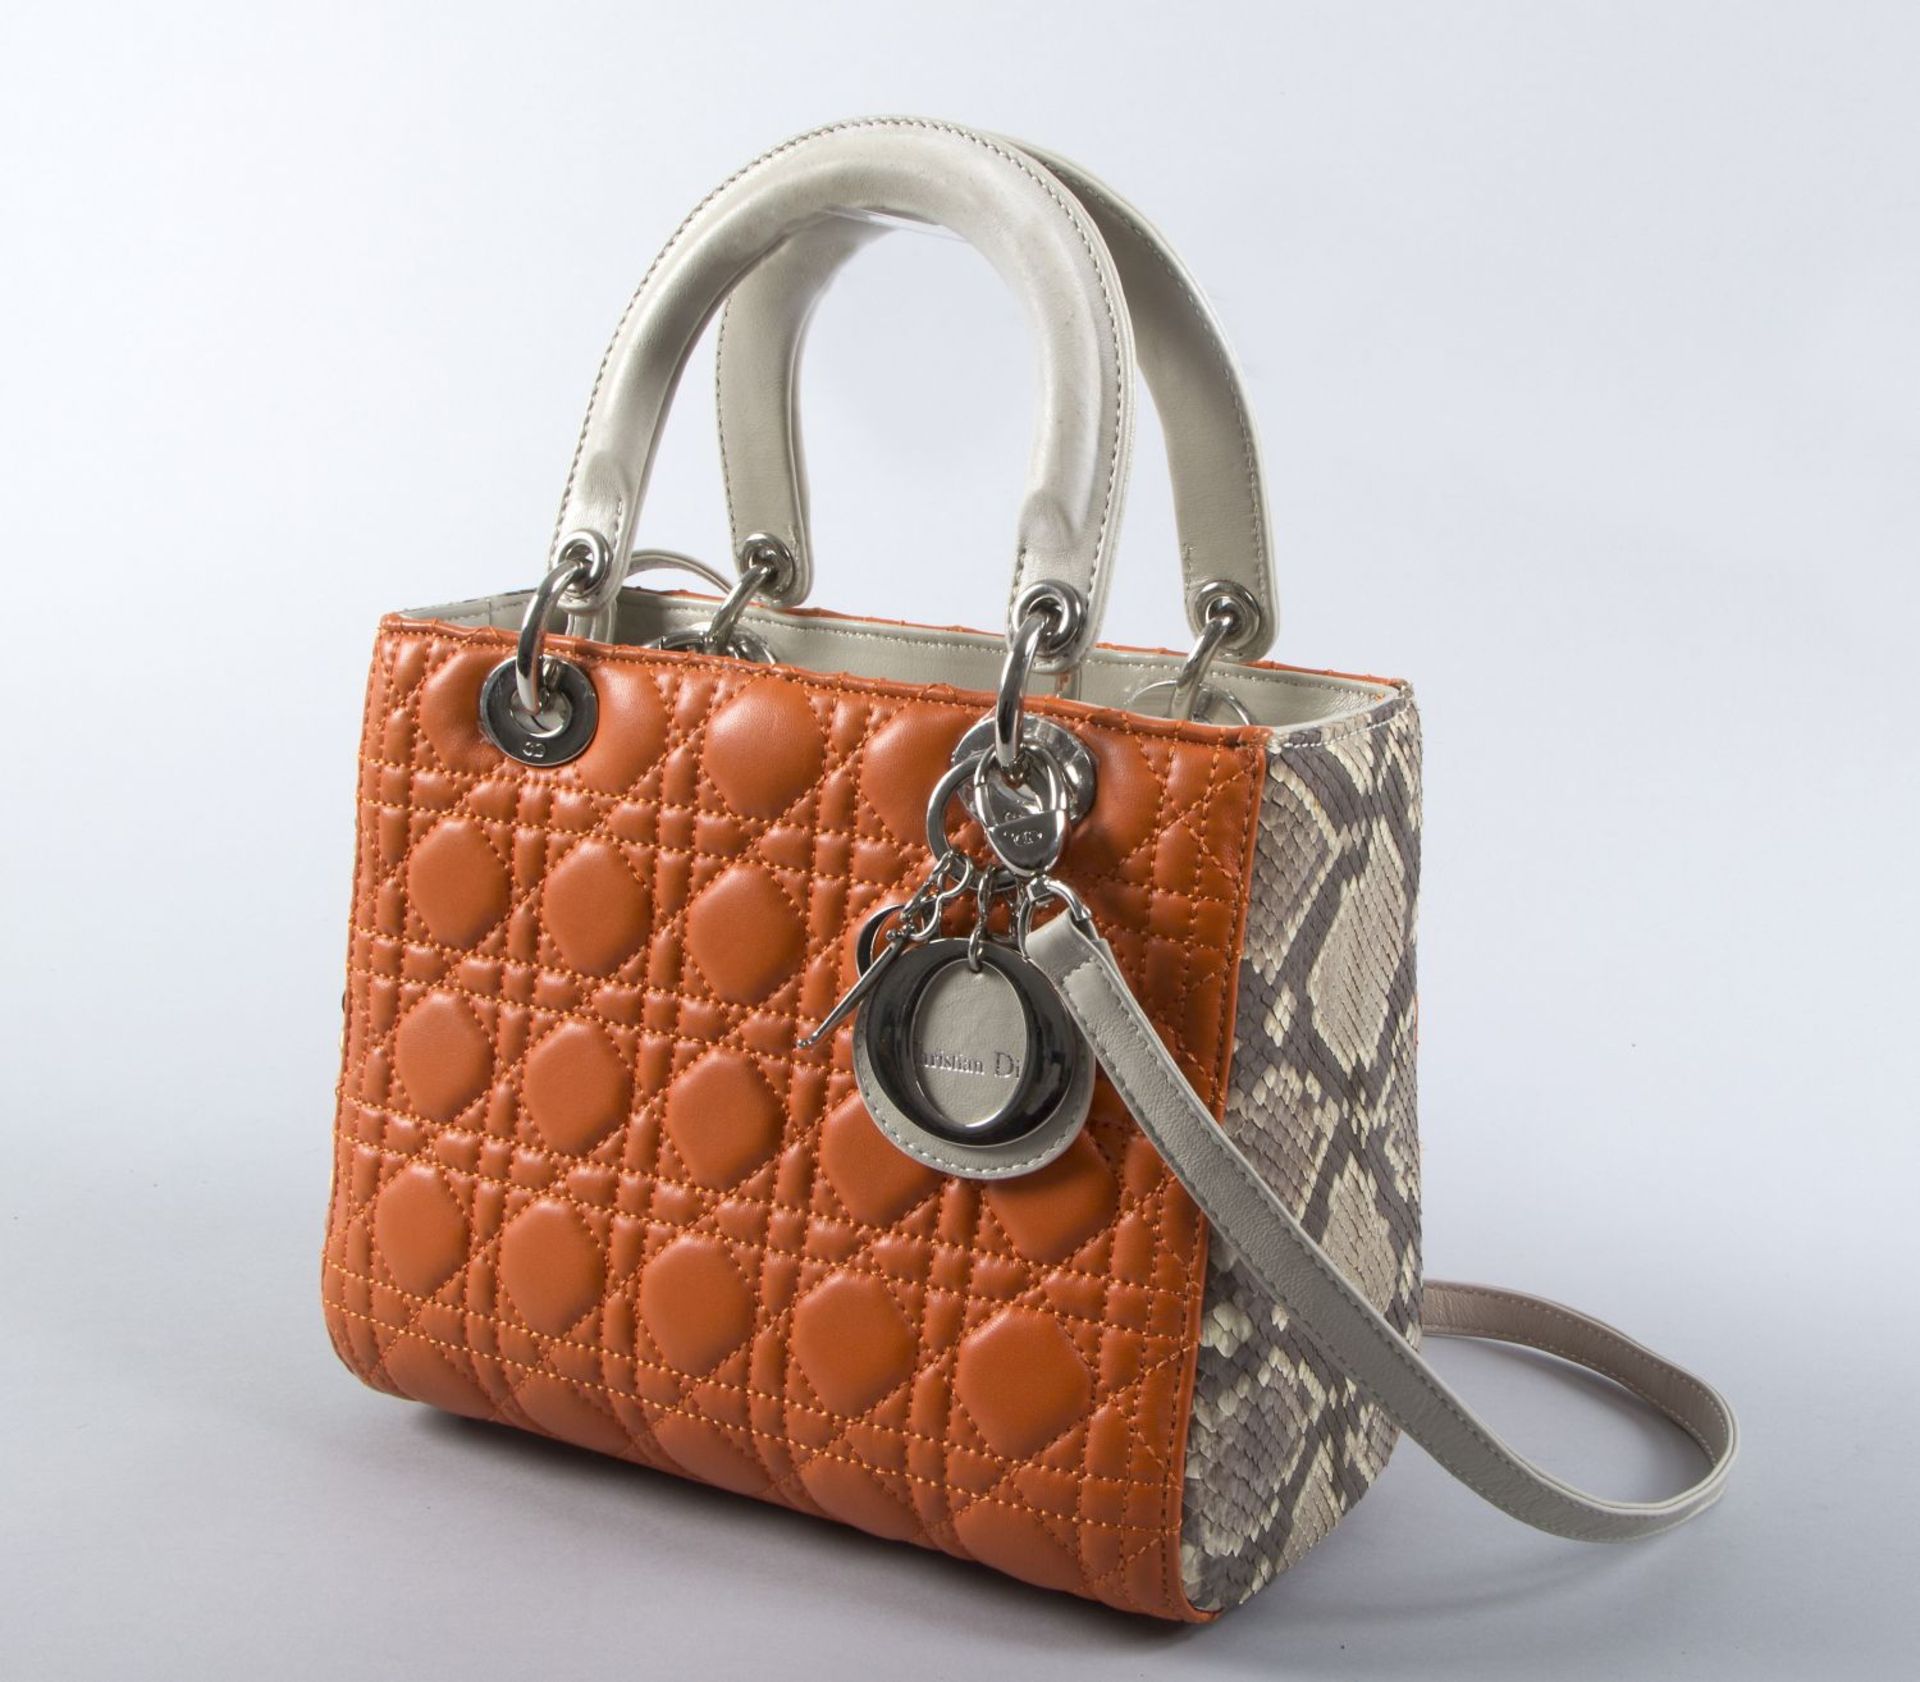 Christian Dior "Lady Dior" HandtascheOrangefarbenes Nappaleder mit der typischen Cannage-Steppung, - Bild 2 aus 5